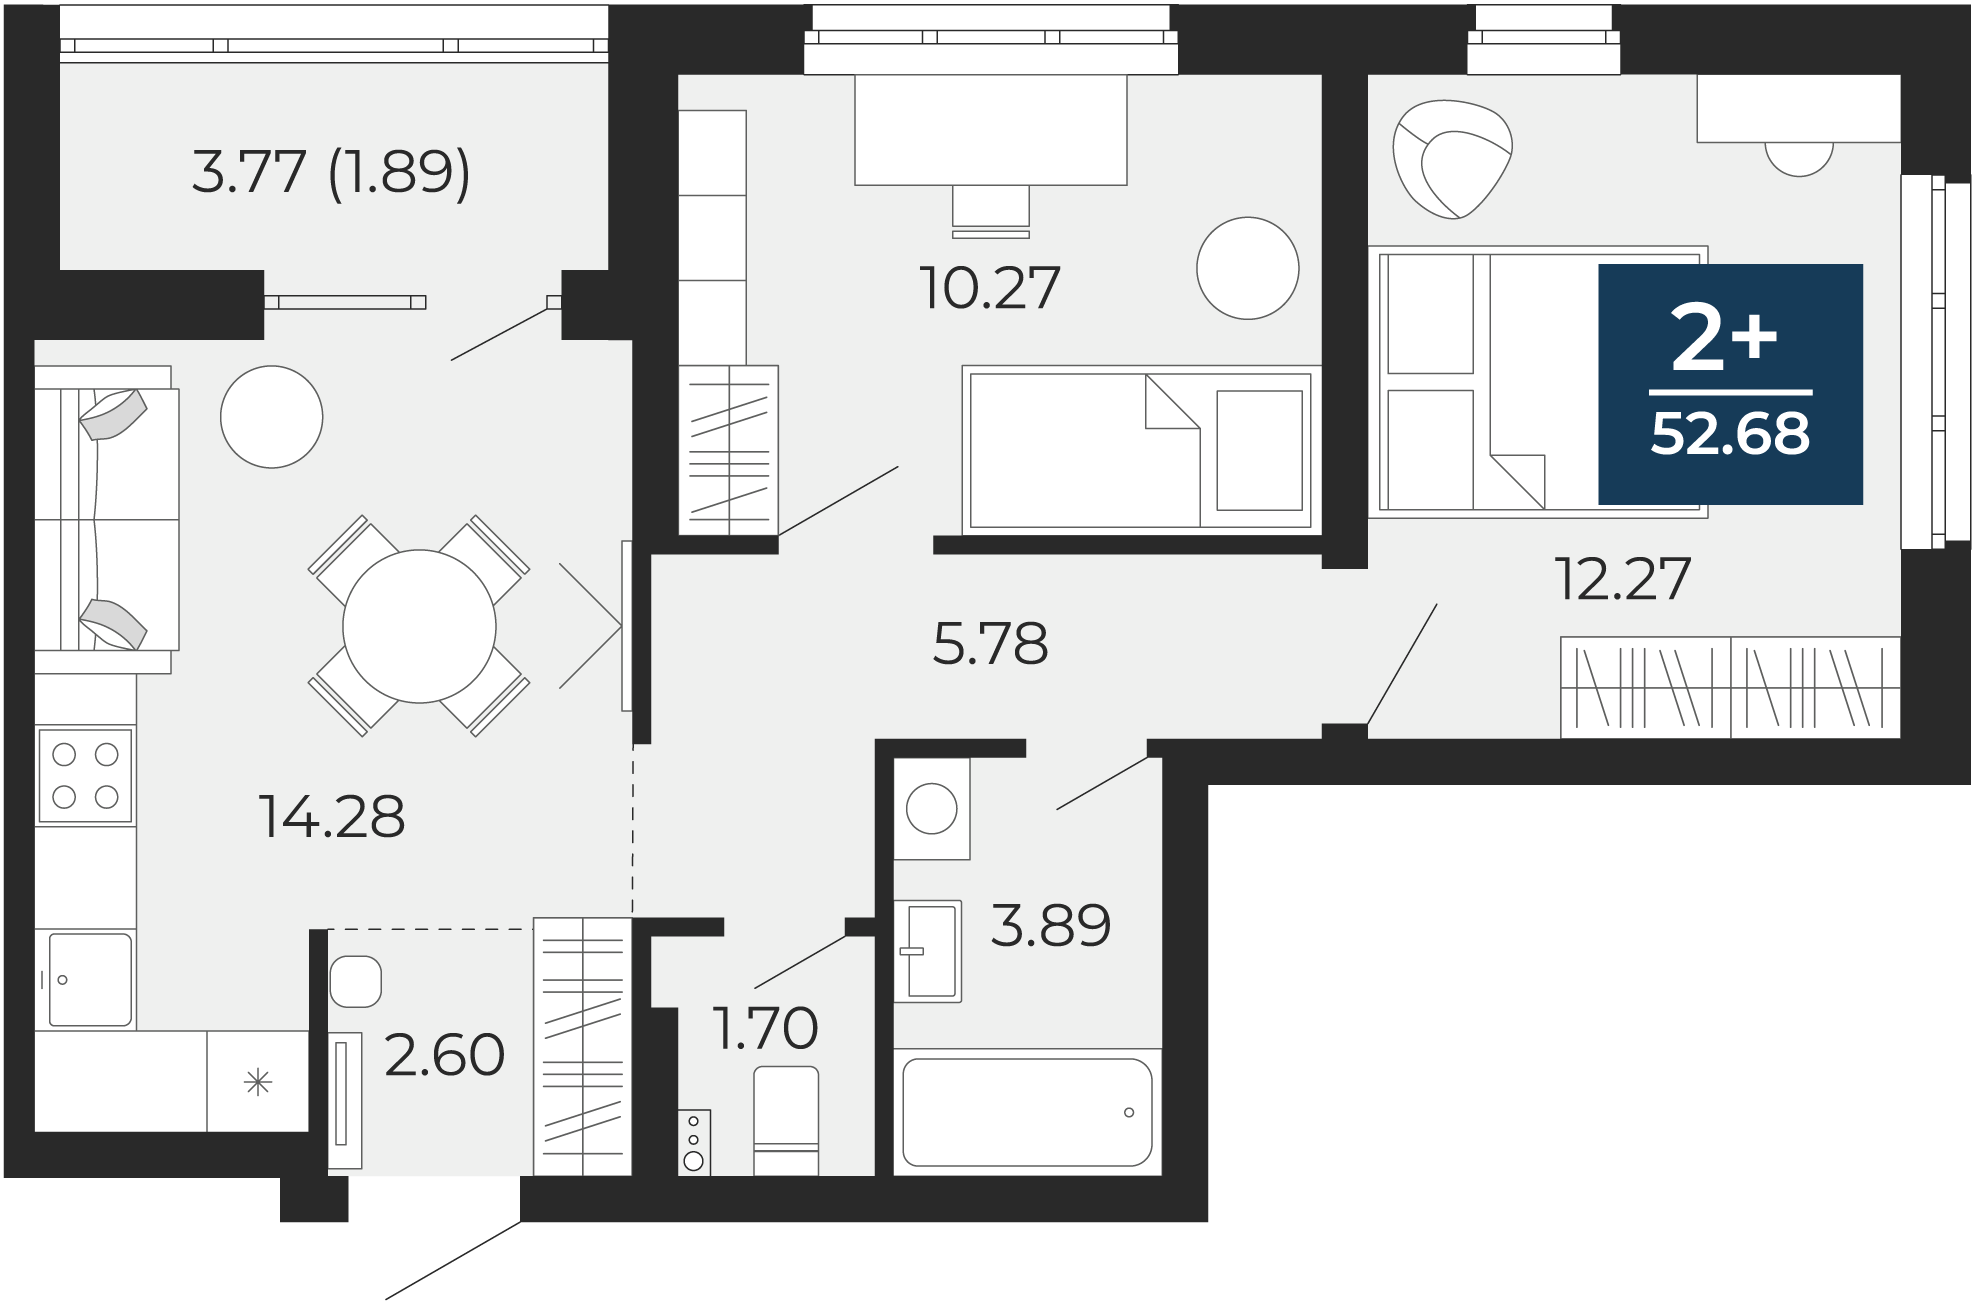 Квартира № 269, 2-комнатная, 52.68 кв. м, 2 этаж